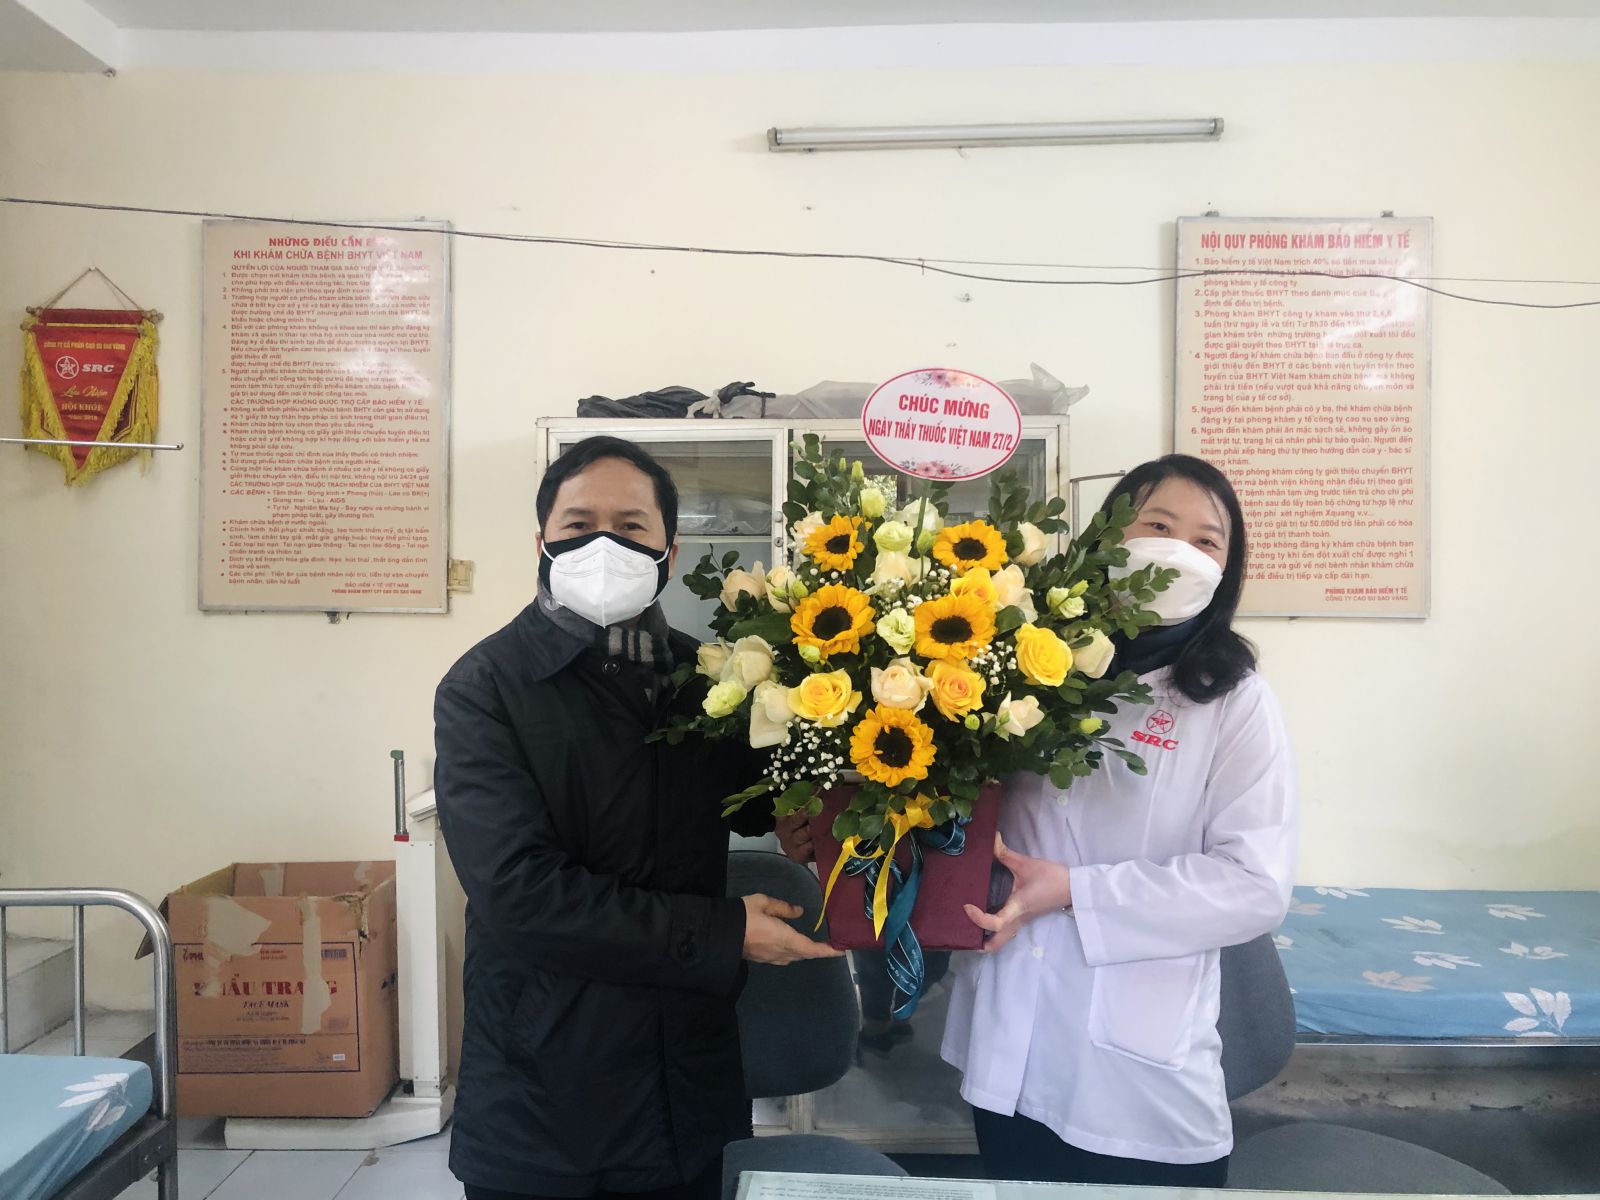 Đồng chí Nguyễn Việt Hùng - Bí thư Đảng uỷ, Tổng Giám đốc Công ty tặng hoa chúc mừng